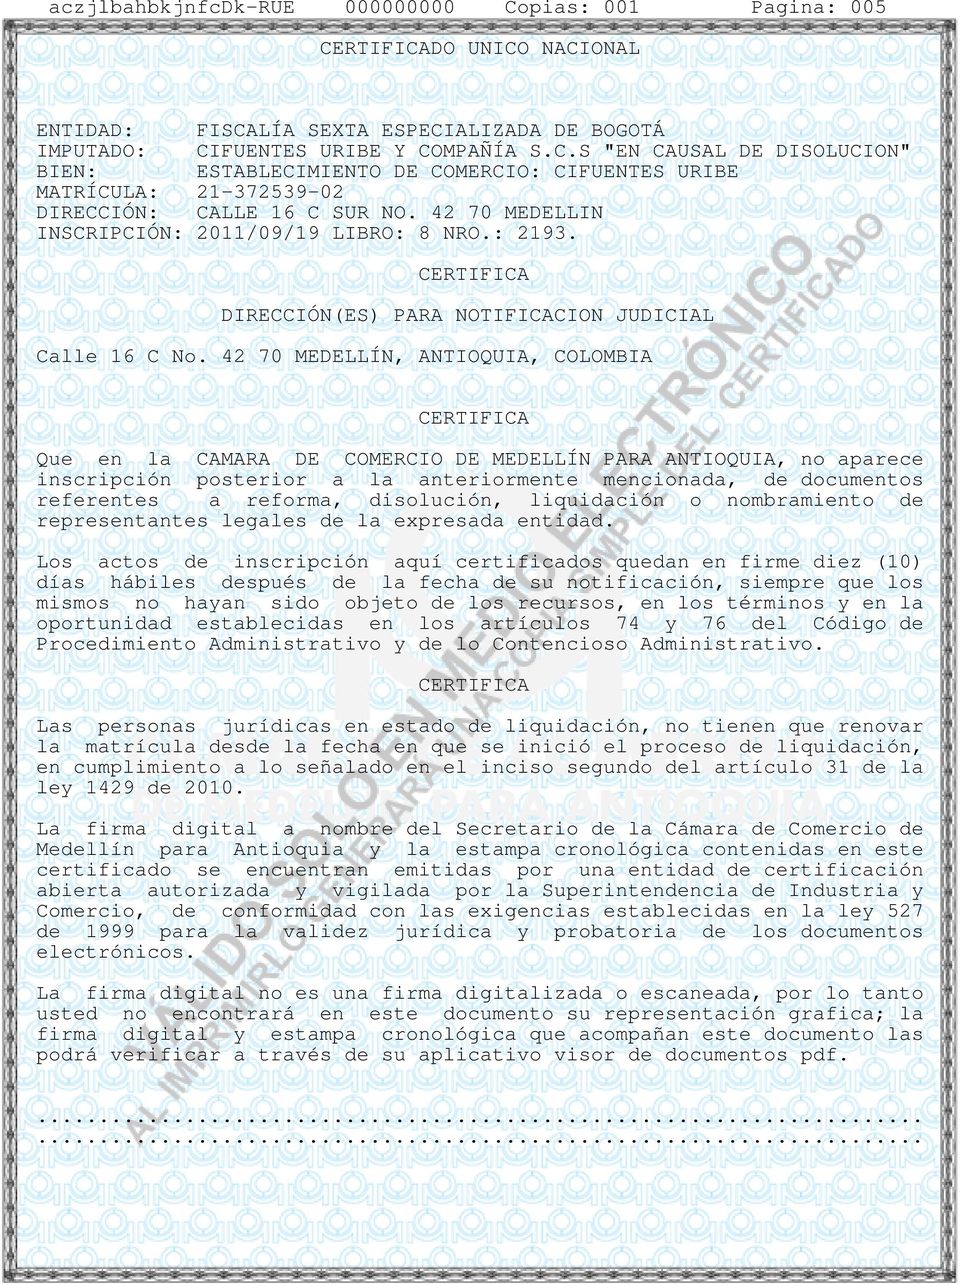 42 70 MEDELLÍN, ANTIOQUIA, COLOMBIA Que en la CAMARA DE COMERCIO DE MEDELLÍN PARA ANTIOQUIA, no aparece inscripción posterior a la anteriormente mencionada, de documentos referentes a reforma,